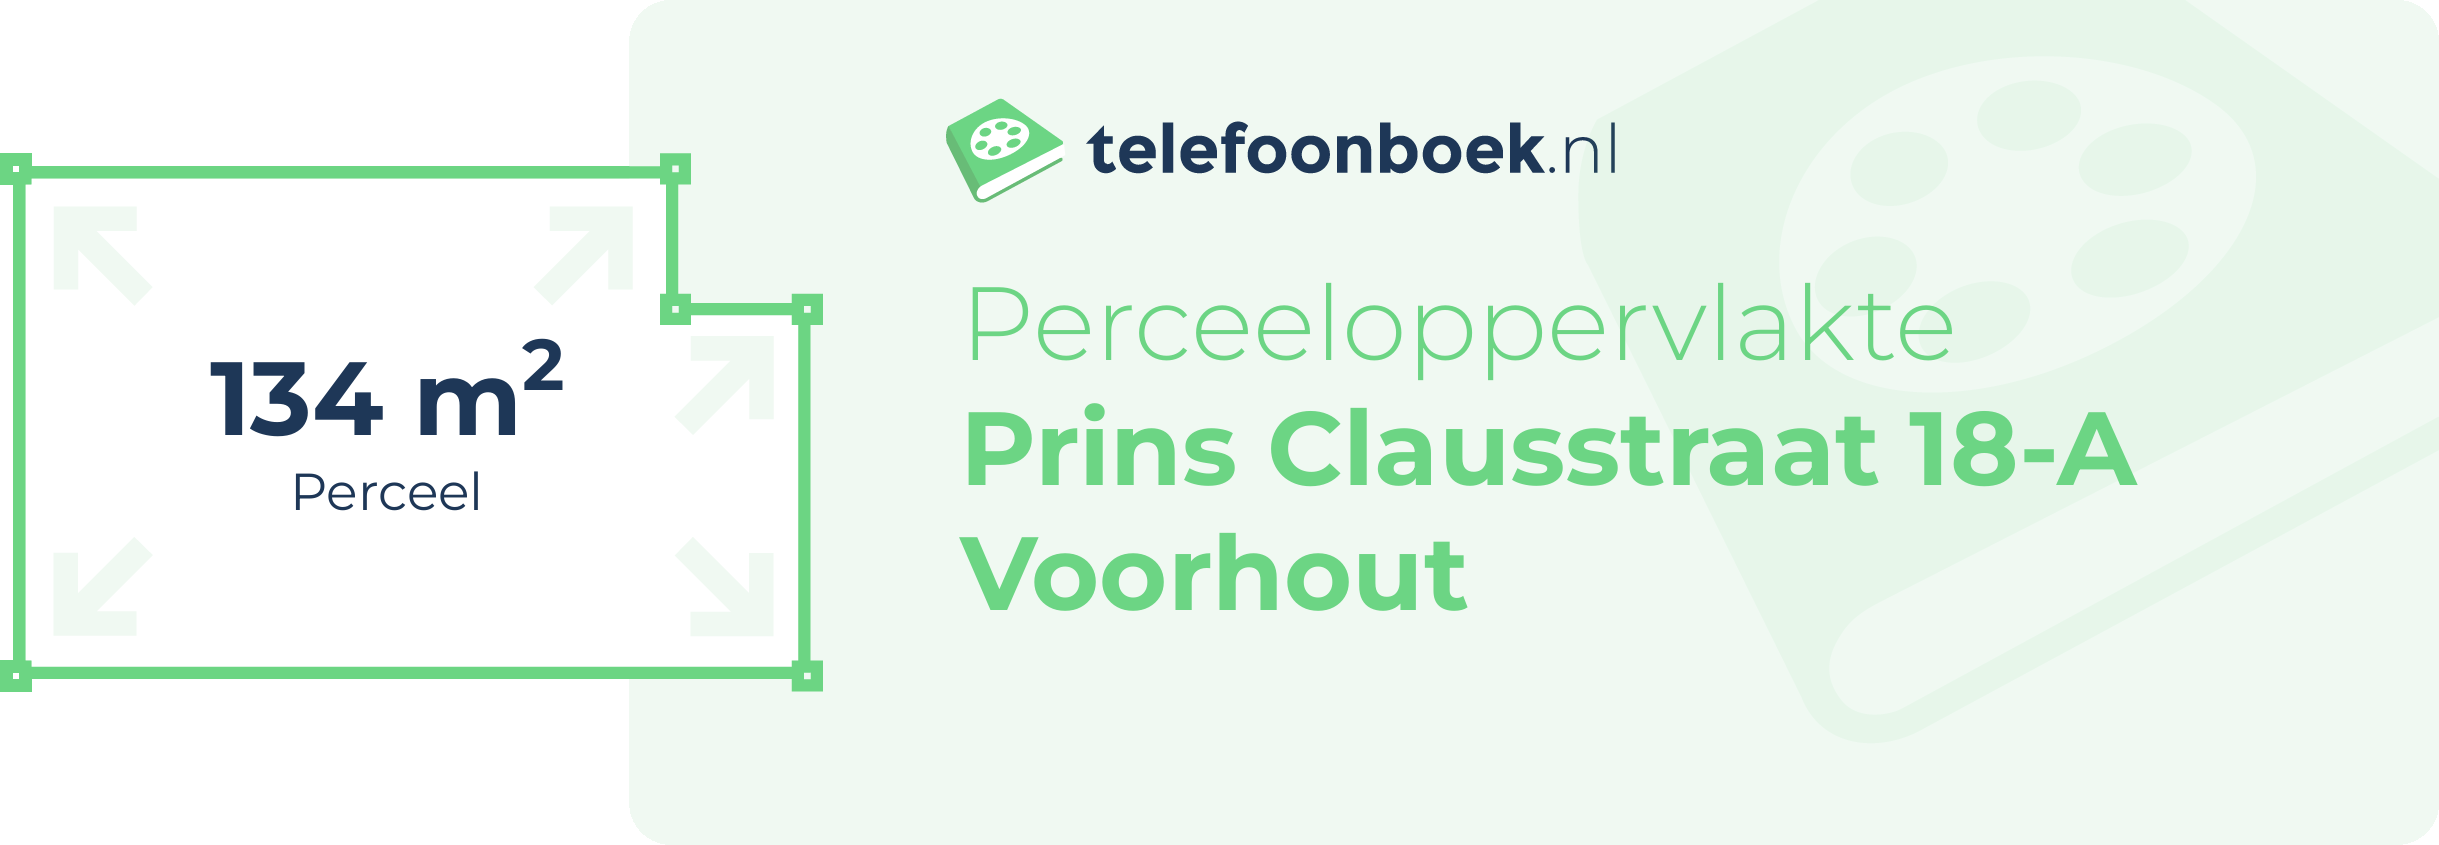 Perceeloppervlakte Prins Clausstraat 18-A Voorhout